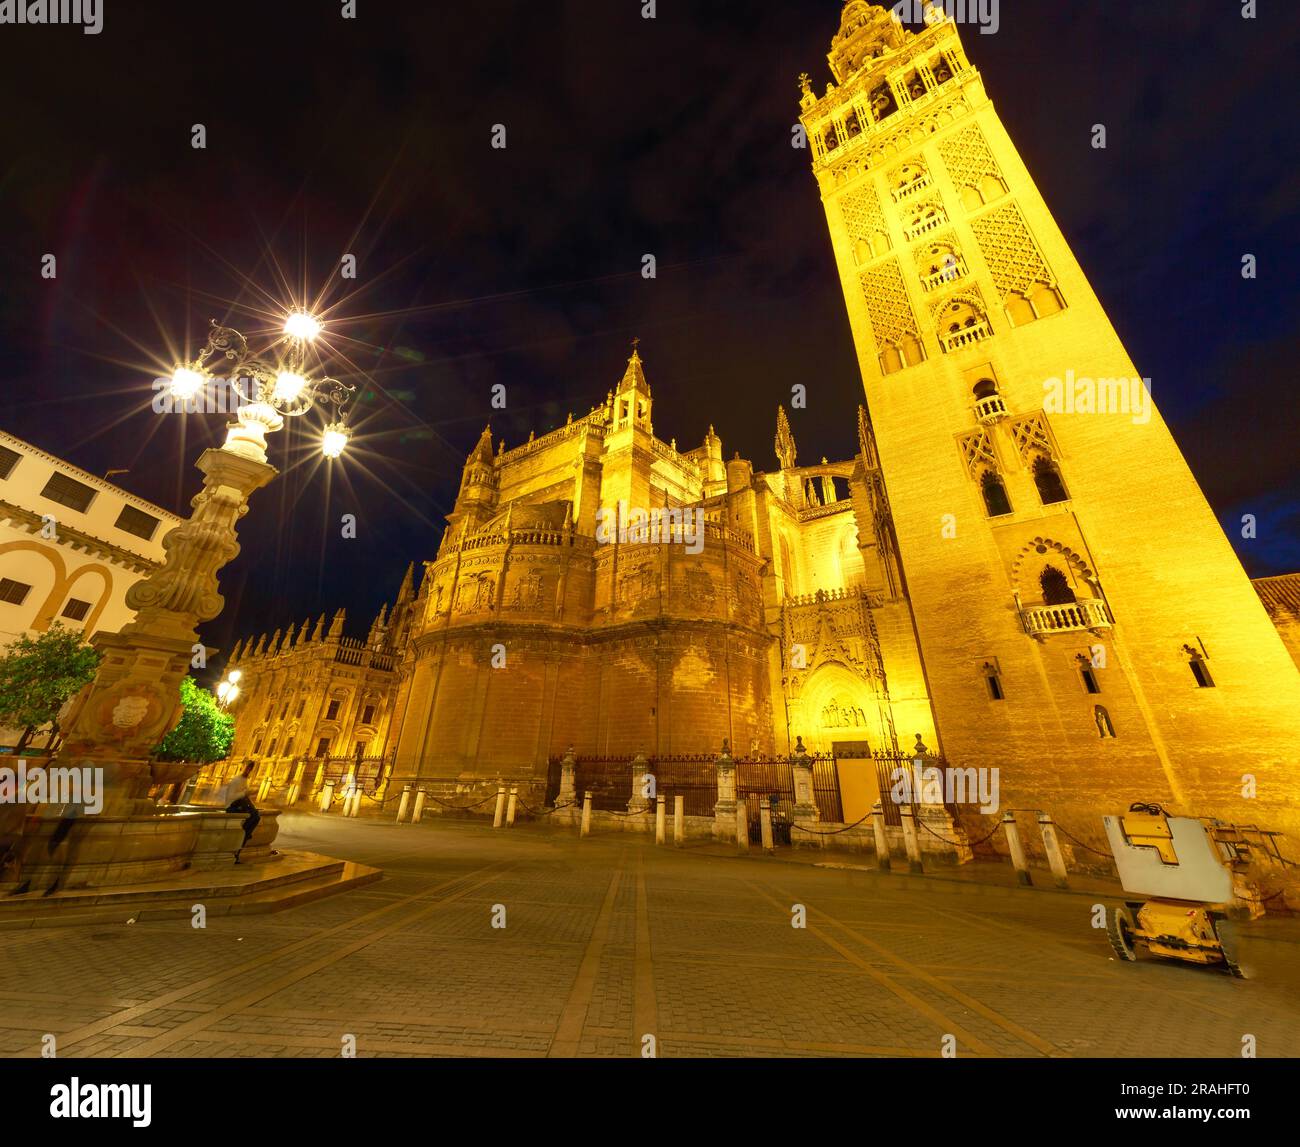 Cattedrale di Siviglia in Spagna, attrazioni turistiche di Siviglia. Cattedrale di Santa Maria del luogo di interesse, cattolica romana e la più grande chiesa gotica dell'UNESCO Foto Stock